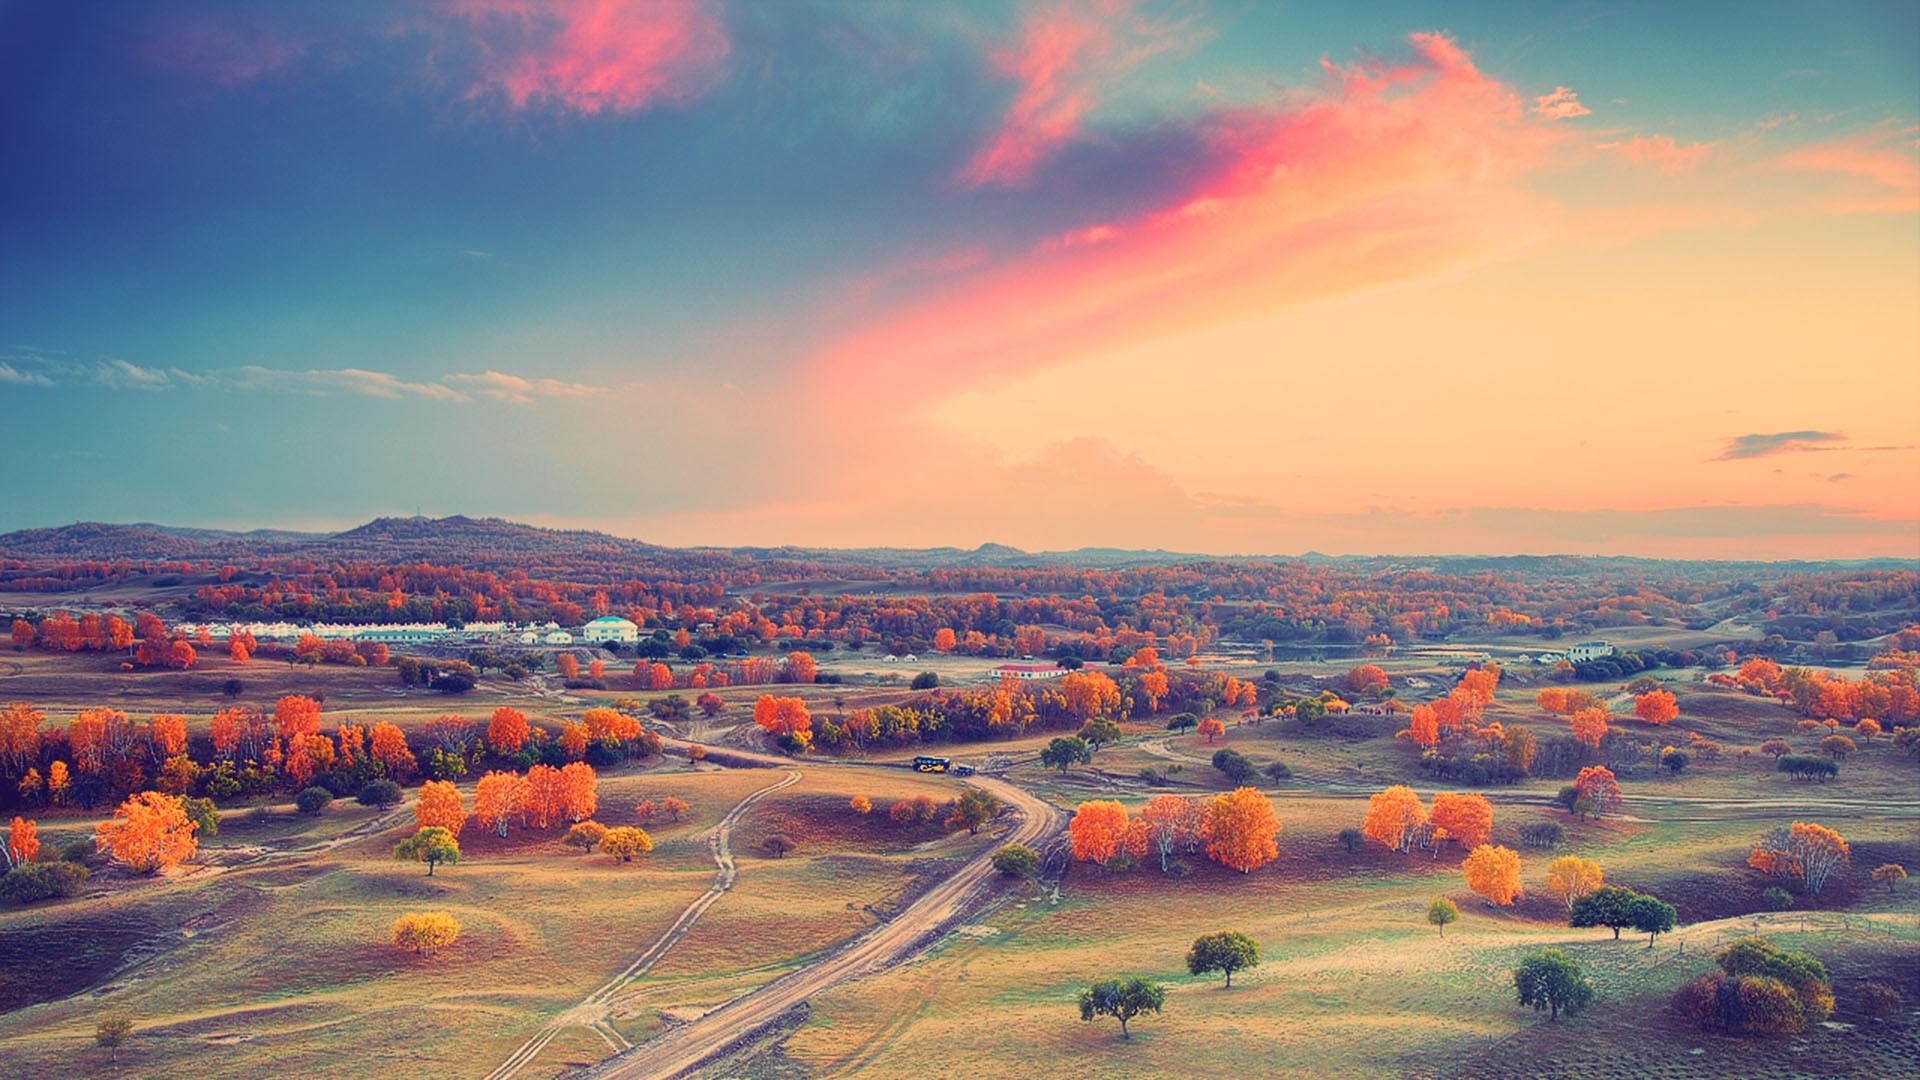 Autumn Sunset Desktop Wallpaper